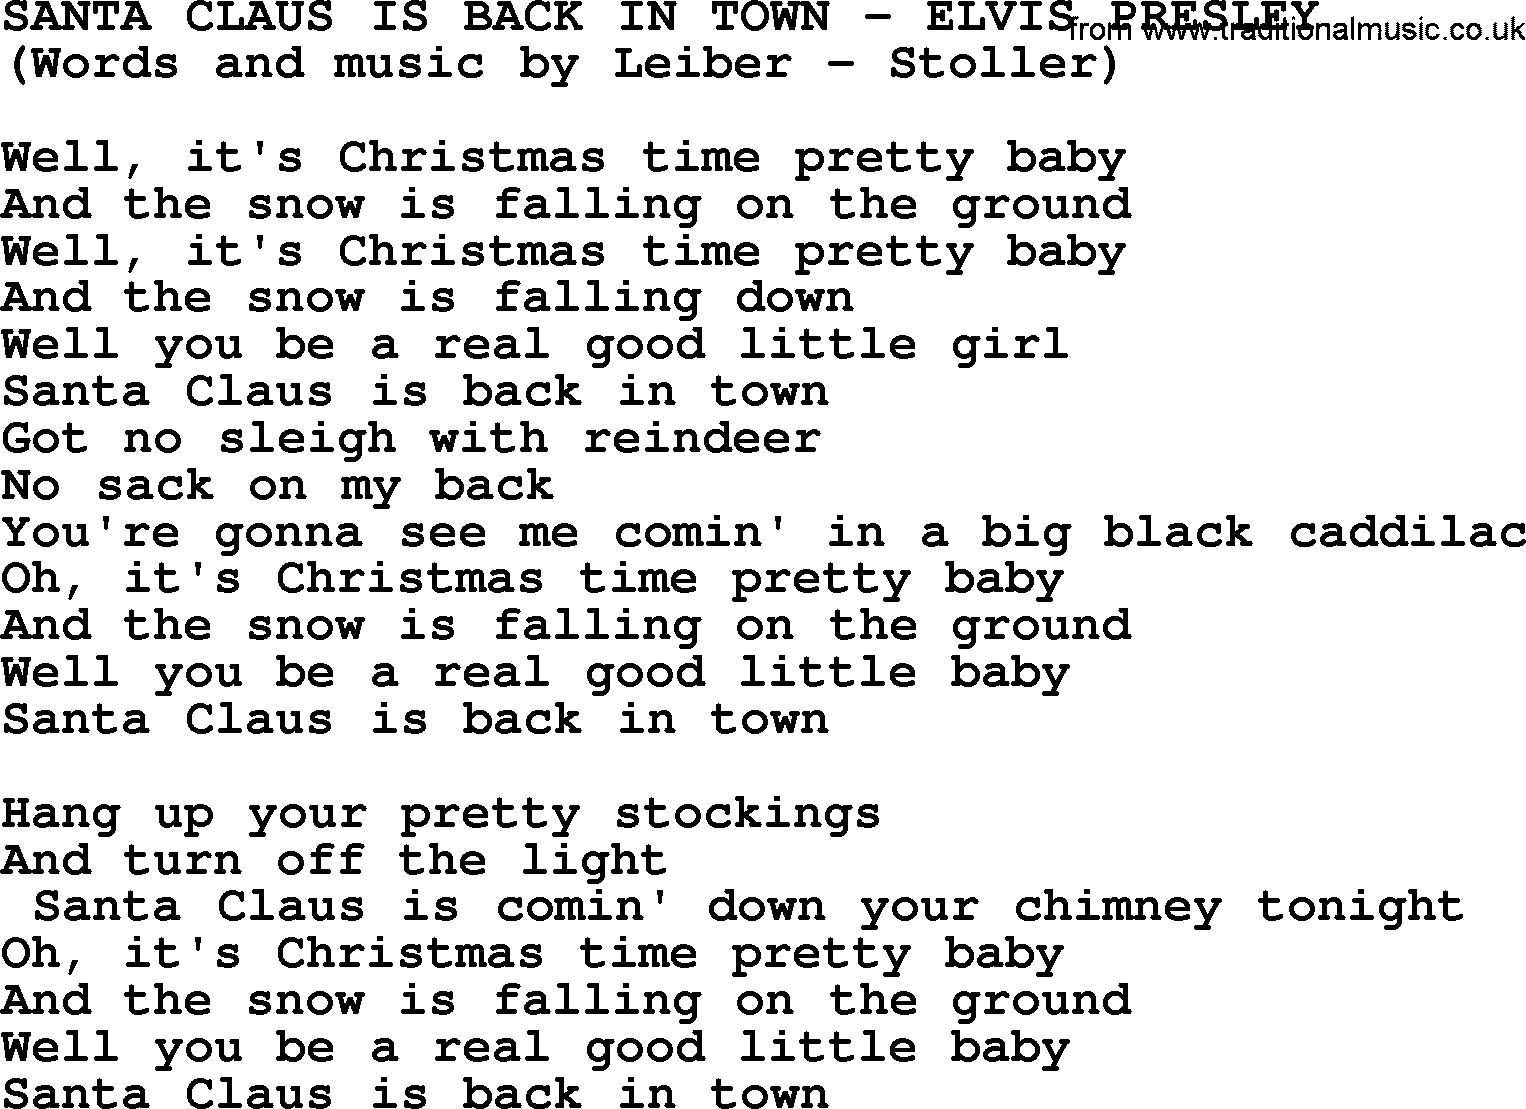 Elvis Presley song: Santa Claus Is Back In Town lyrics